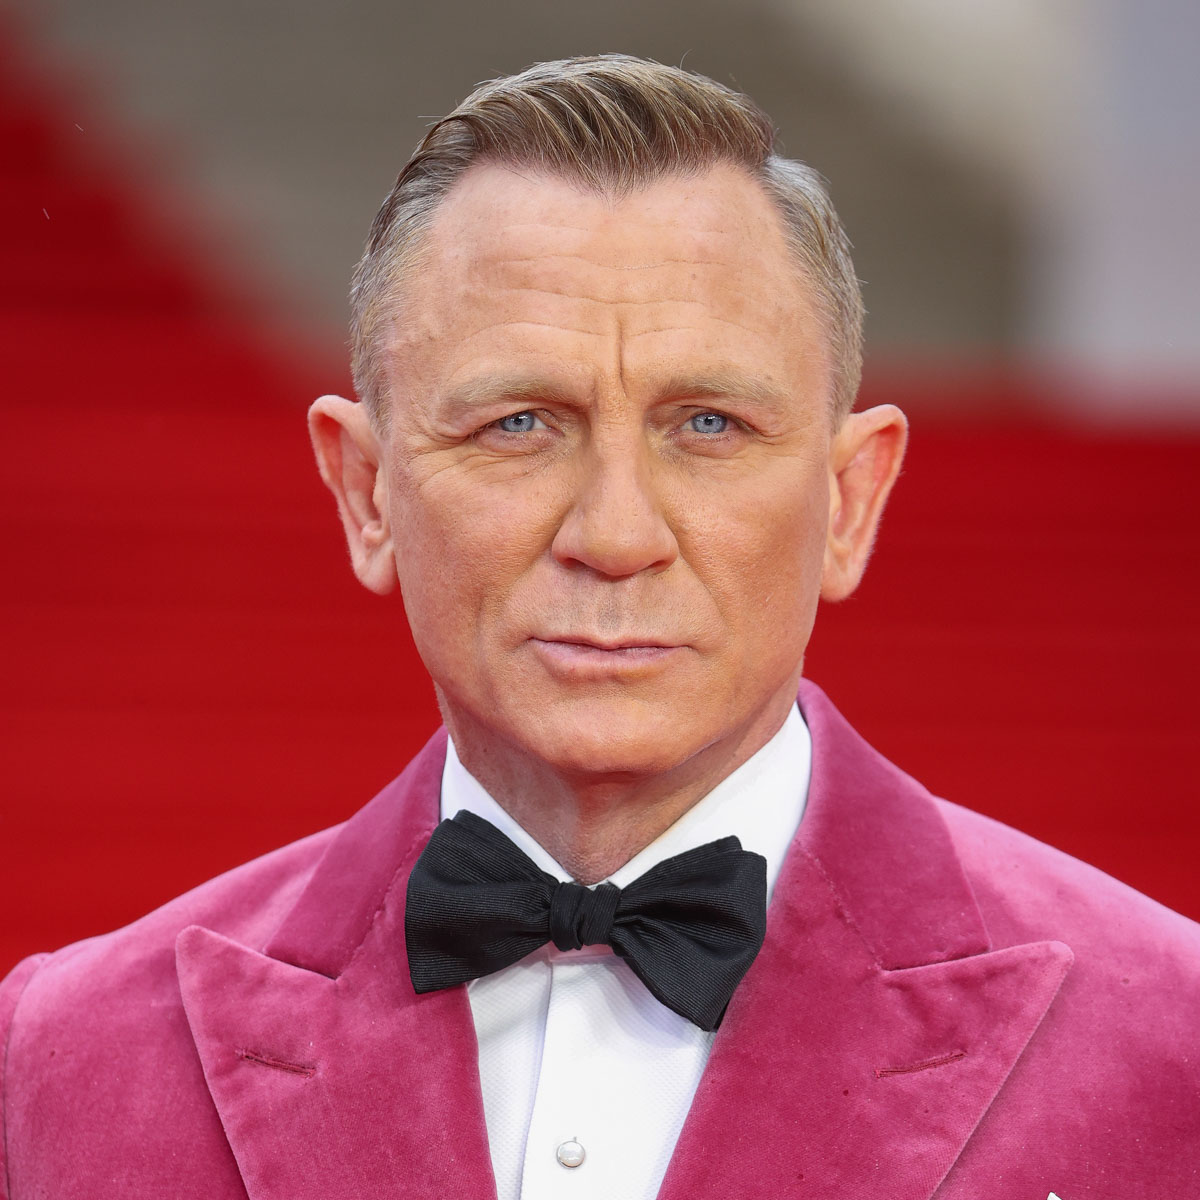 David Beckham should be the next James Bond' - Rediff.com